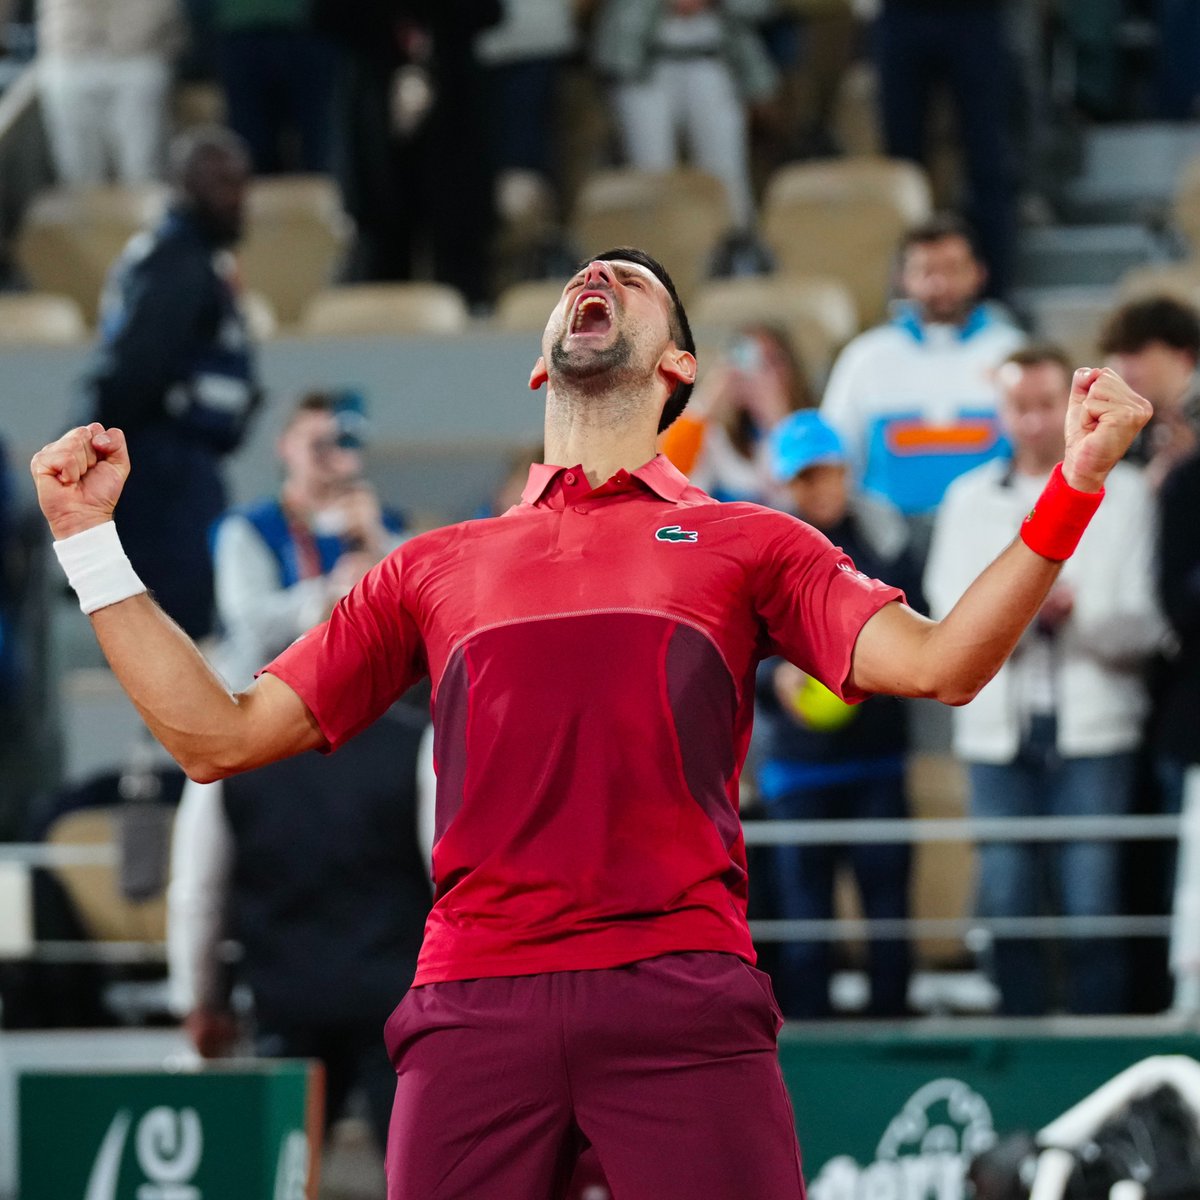 Novak Djokovic 🇷🇸 igualó a Roger Federer como el jugador con más victorias en Grand Slam (369). Tendrá el récord en soledad con un triunfo más entre Roland Garros-Wimbledon-US Open-Australian Open. Inevitable.